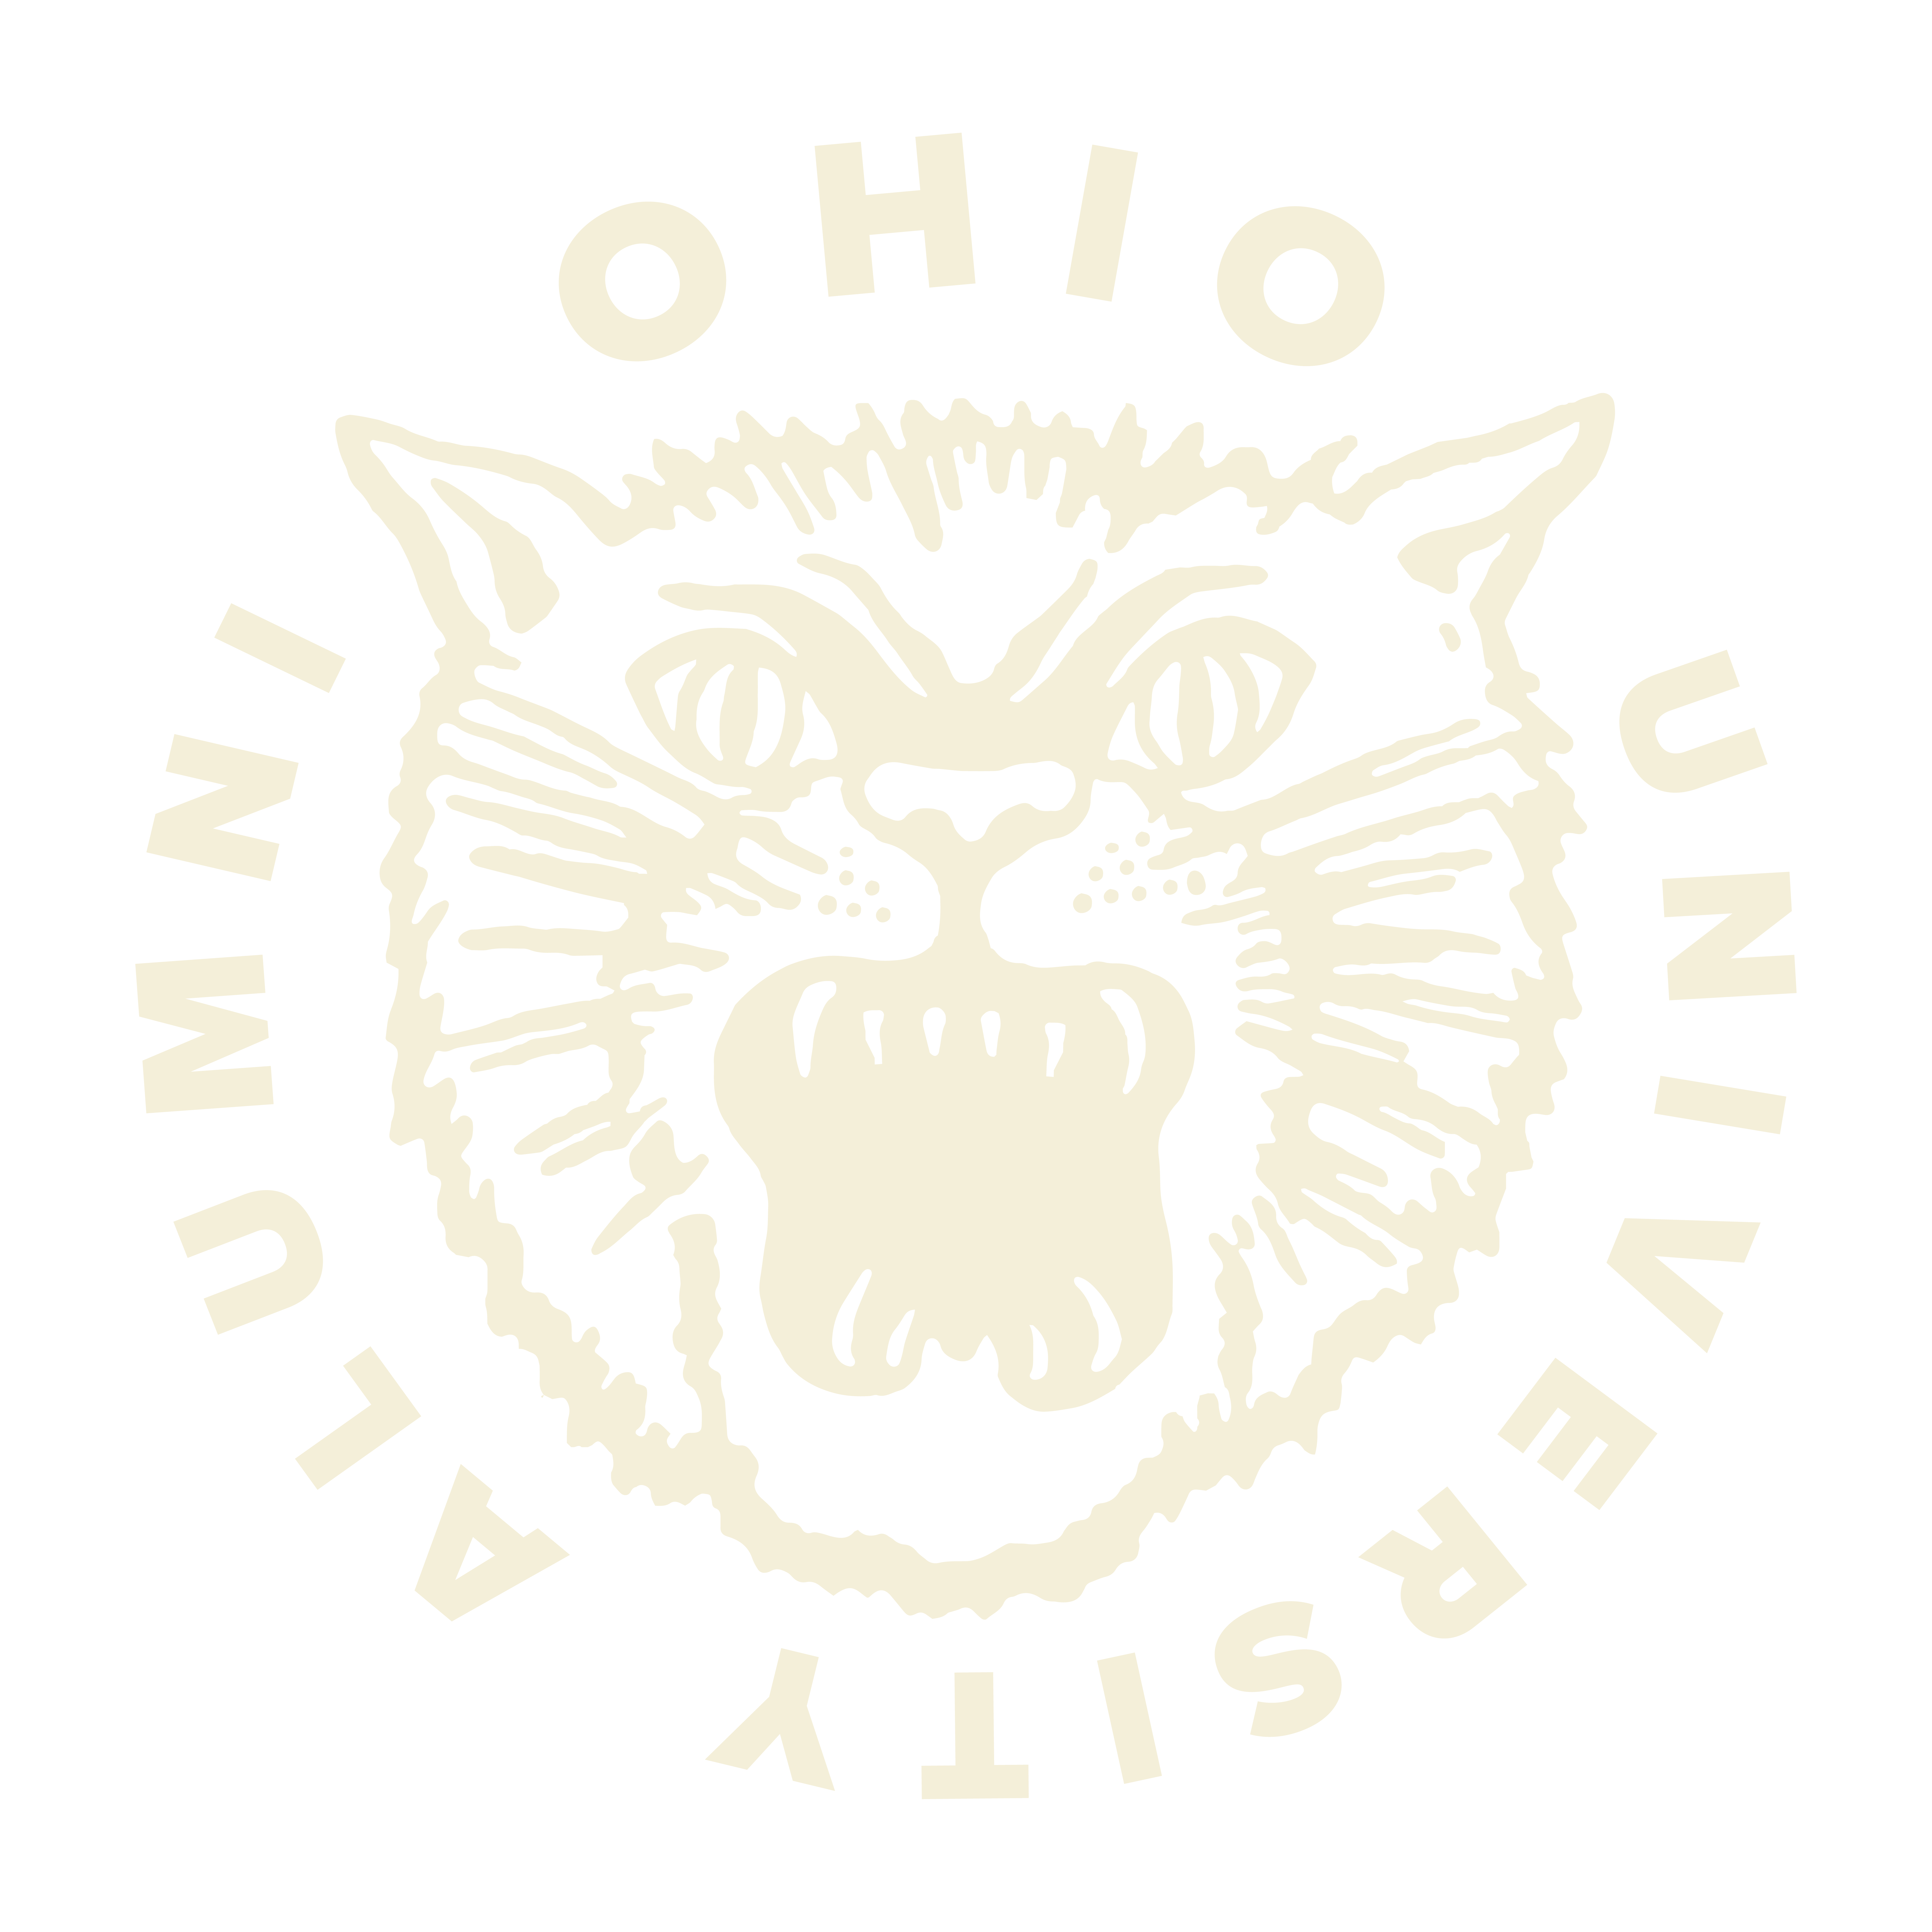 Ohio University Marching Badge with stylized bobcat